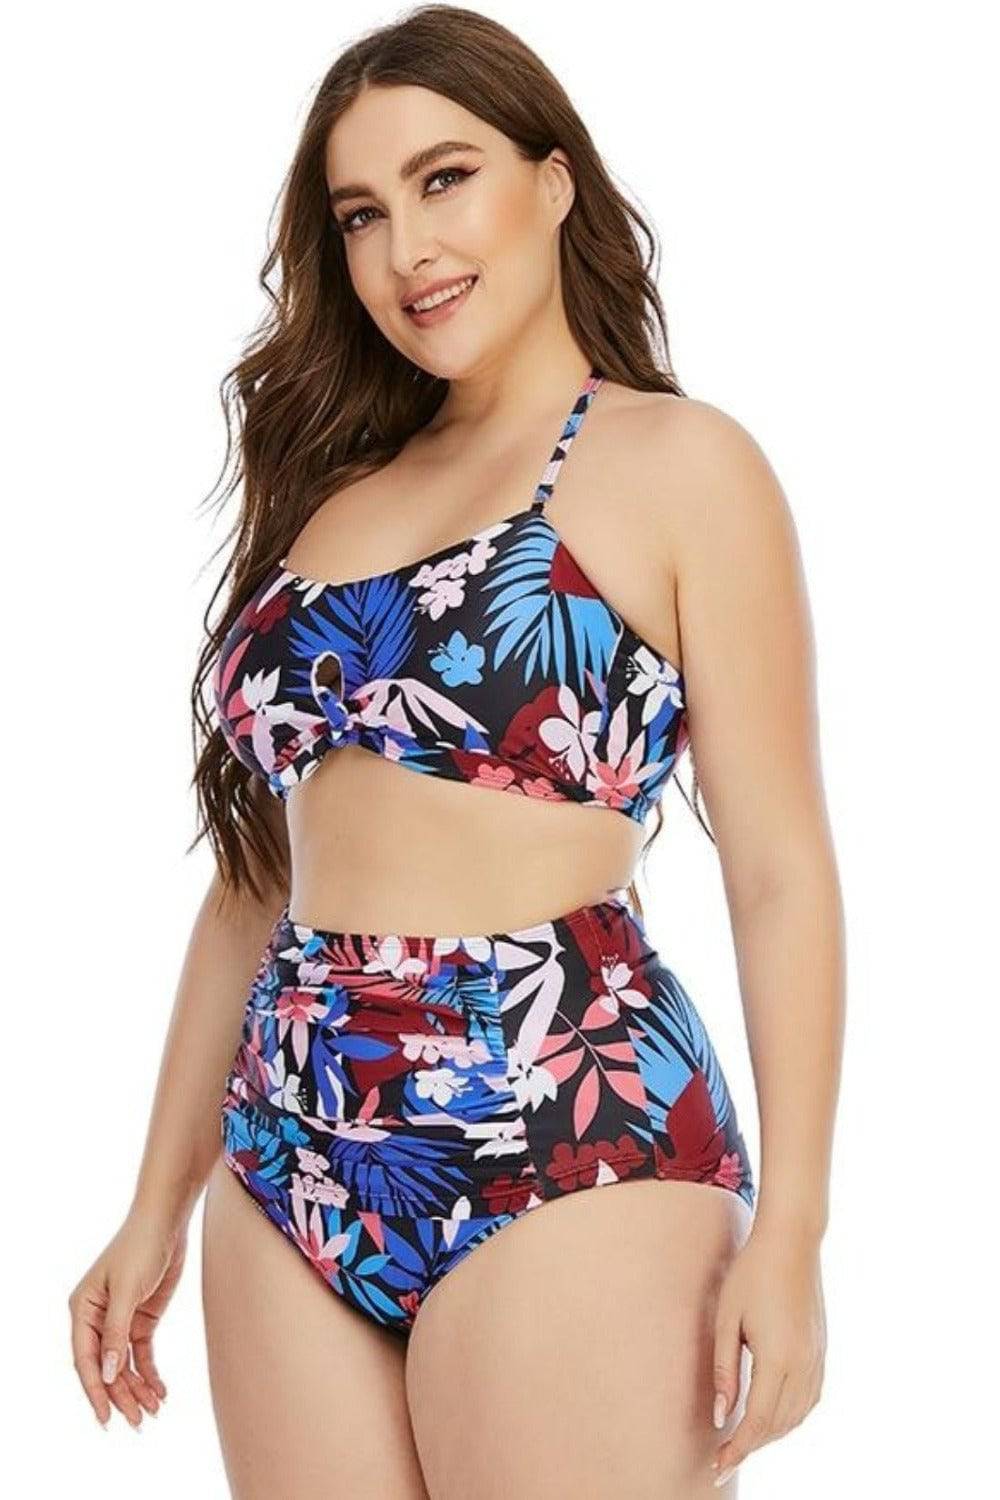 Floral Leaf Print Plus size High Waist Bikini Swimsuit - TGC Boutique - Plus Size Swimsuit